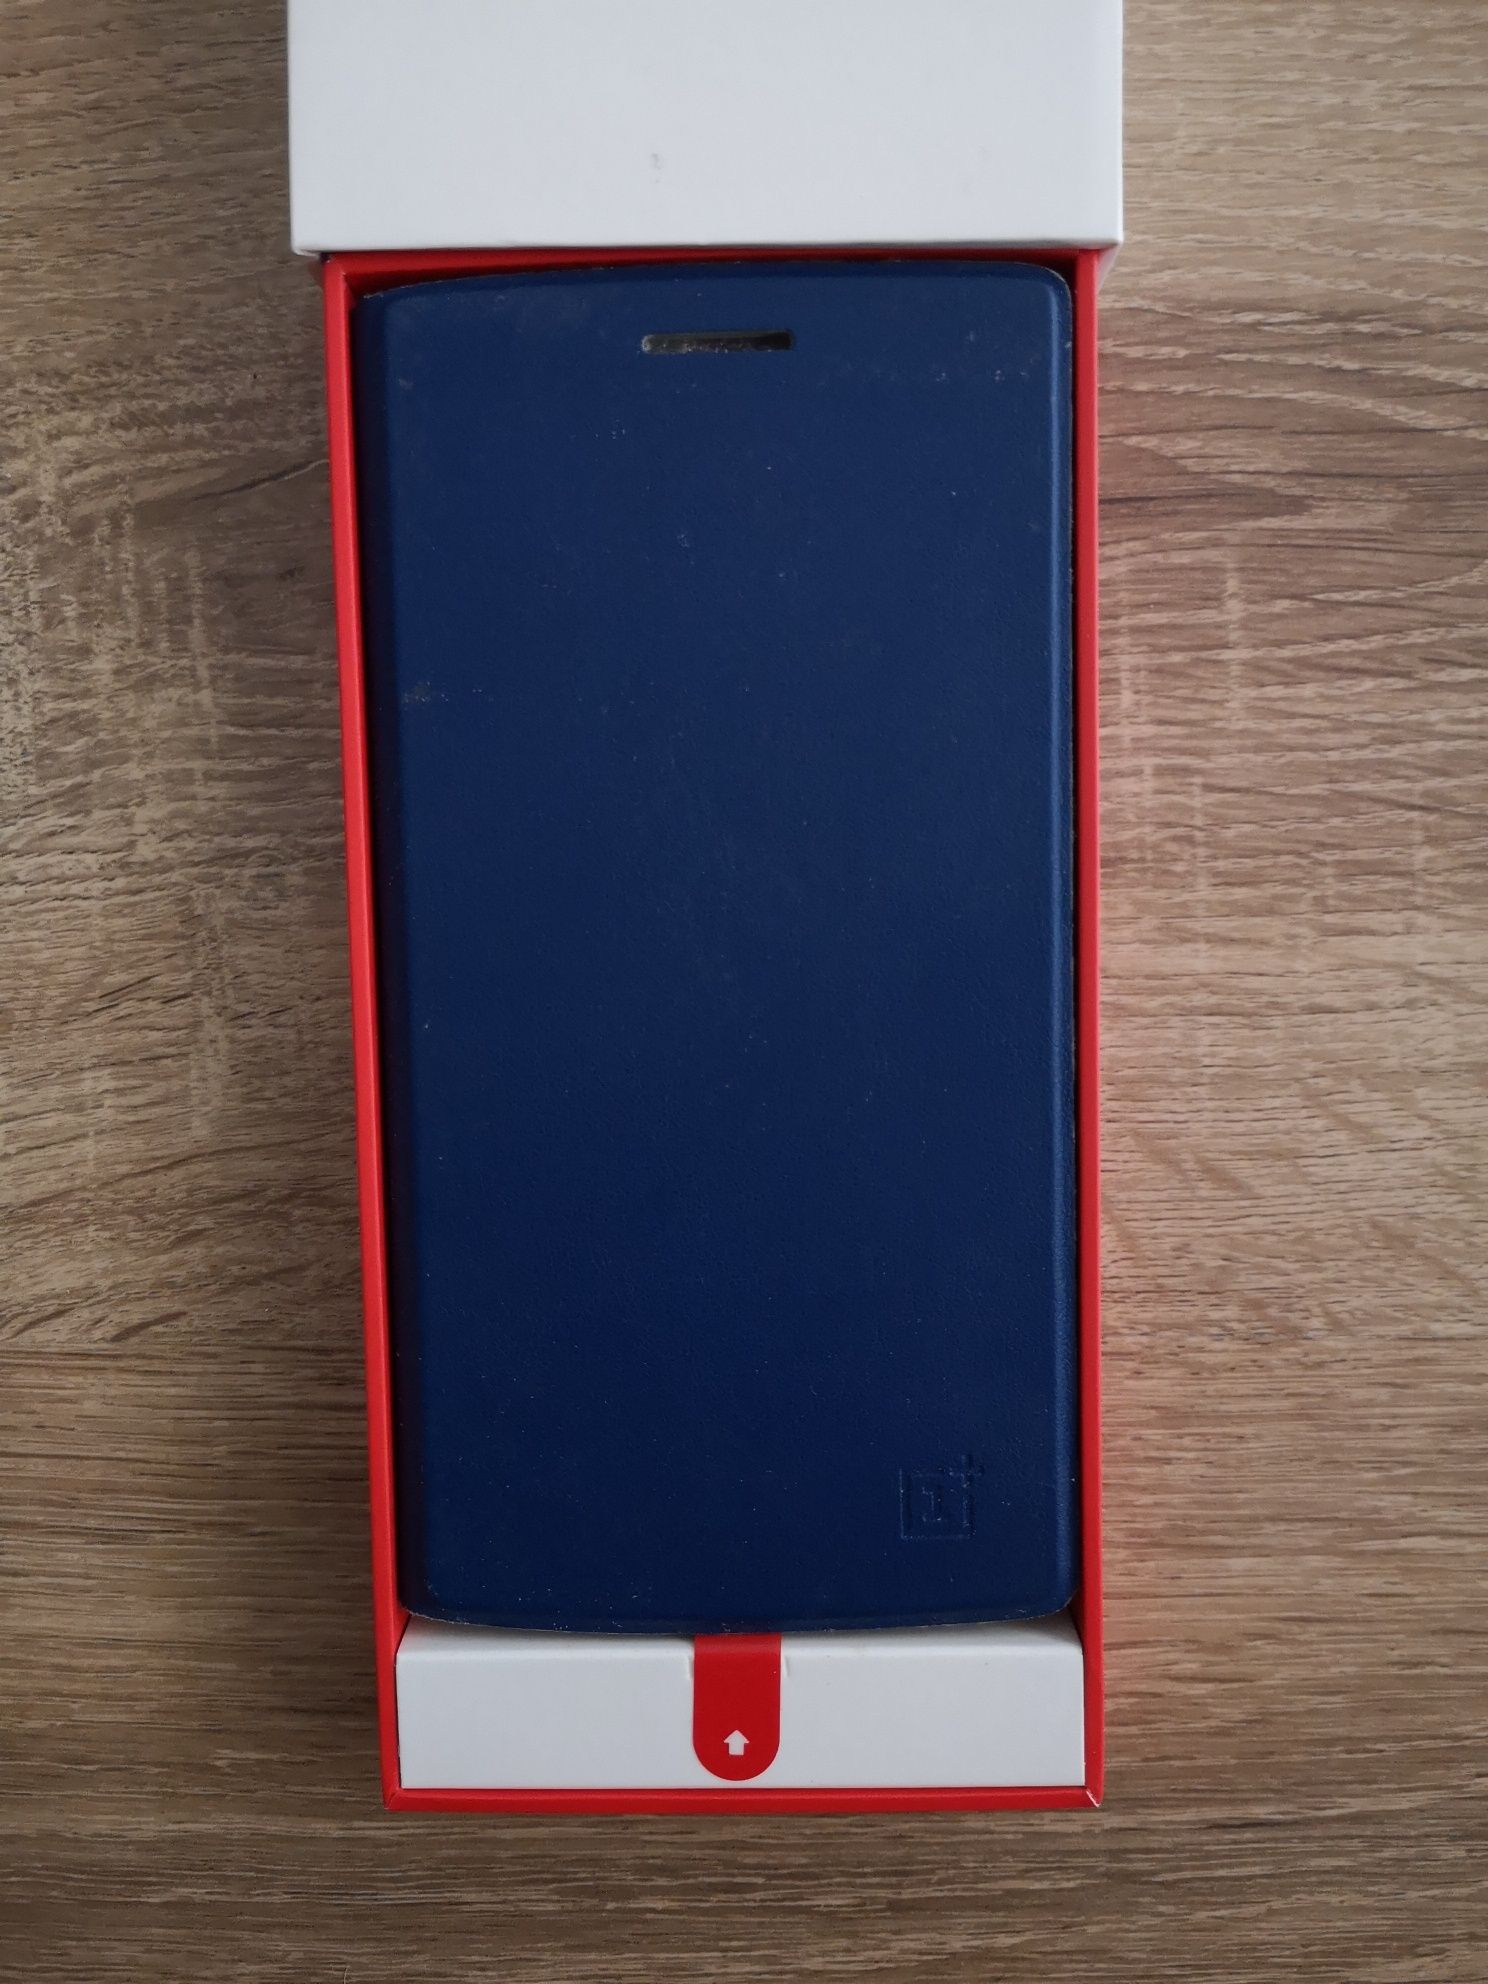 Capas OnePlus One